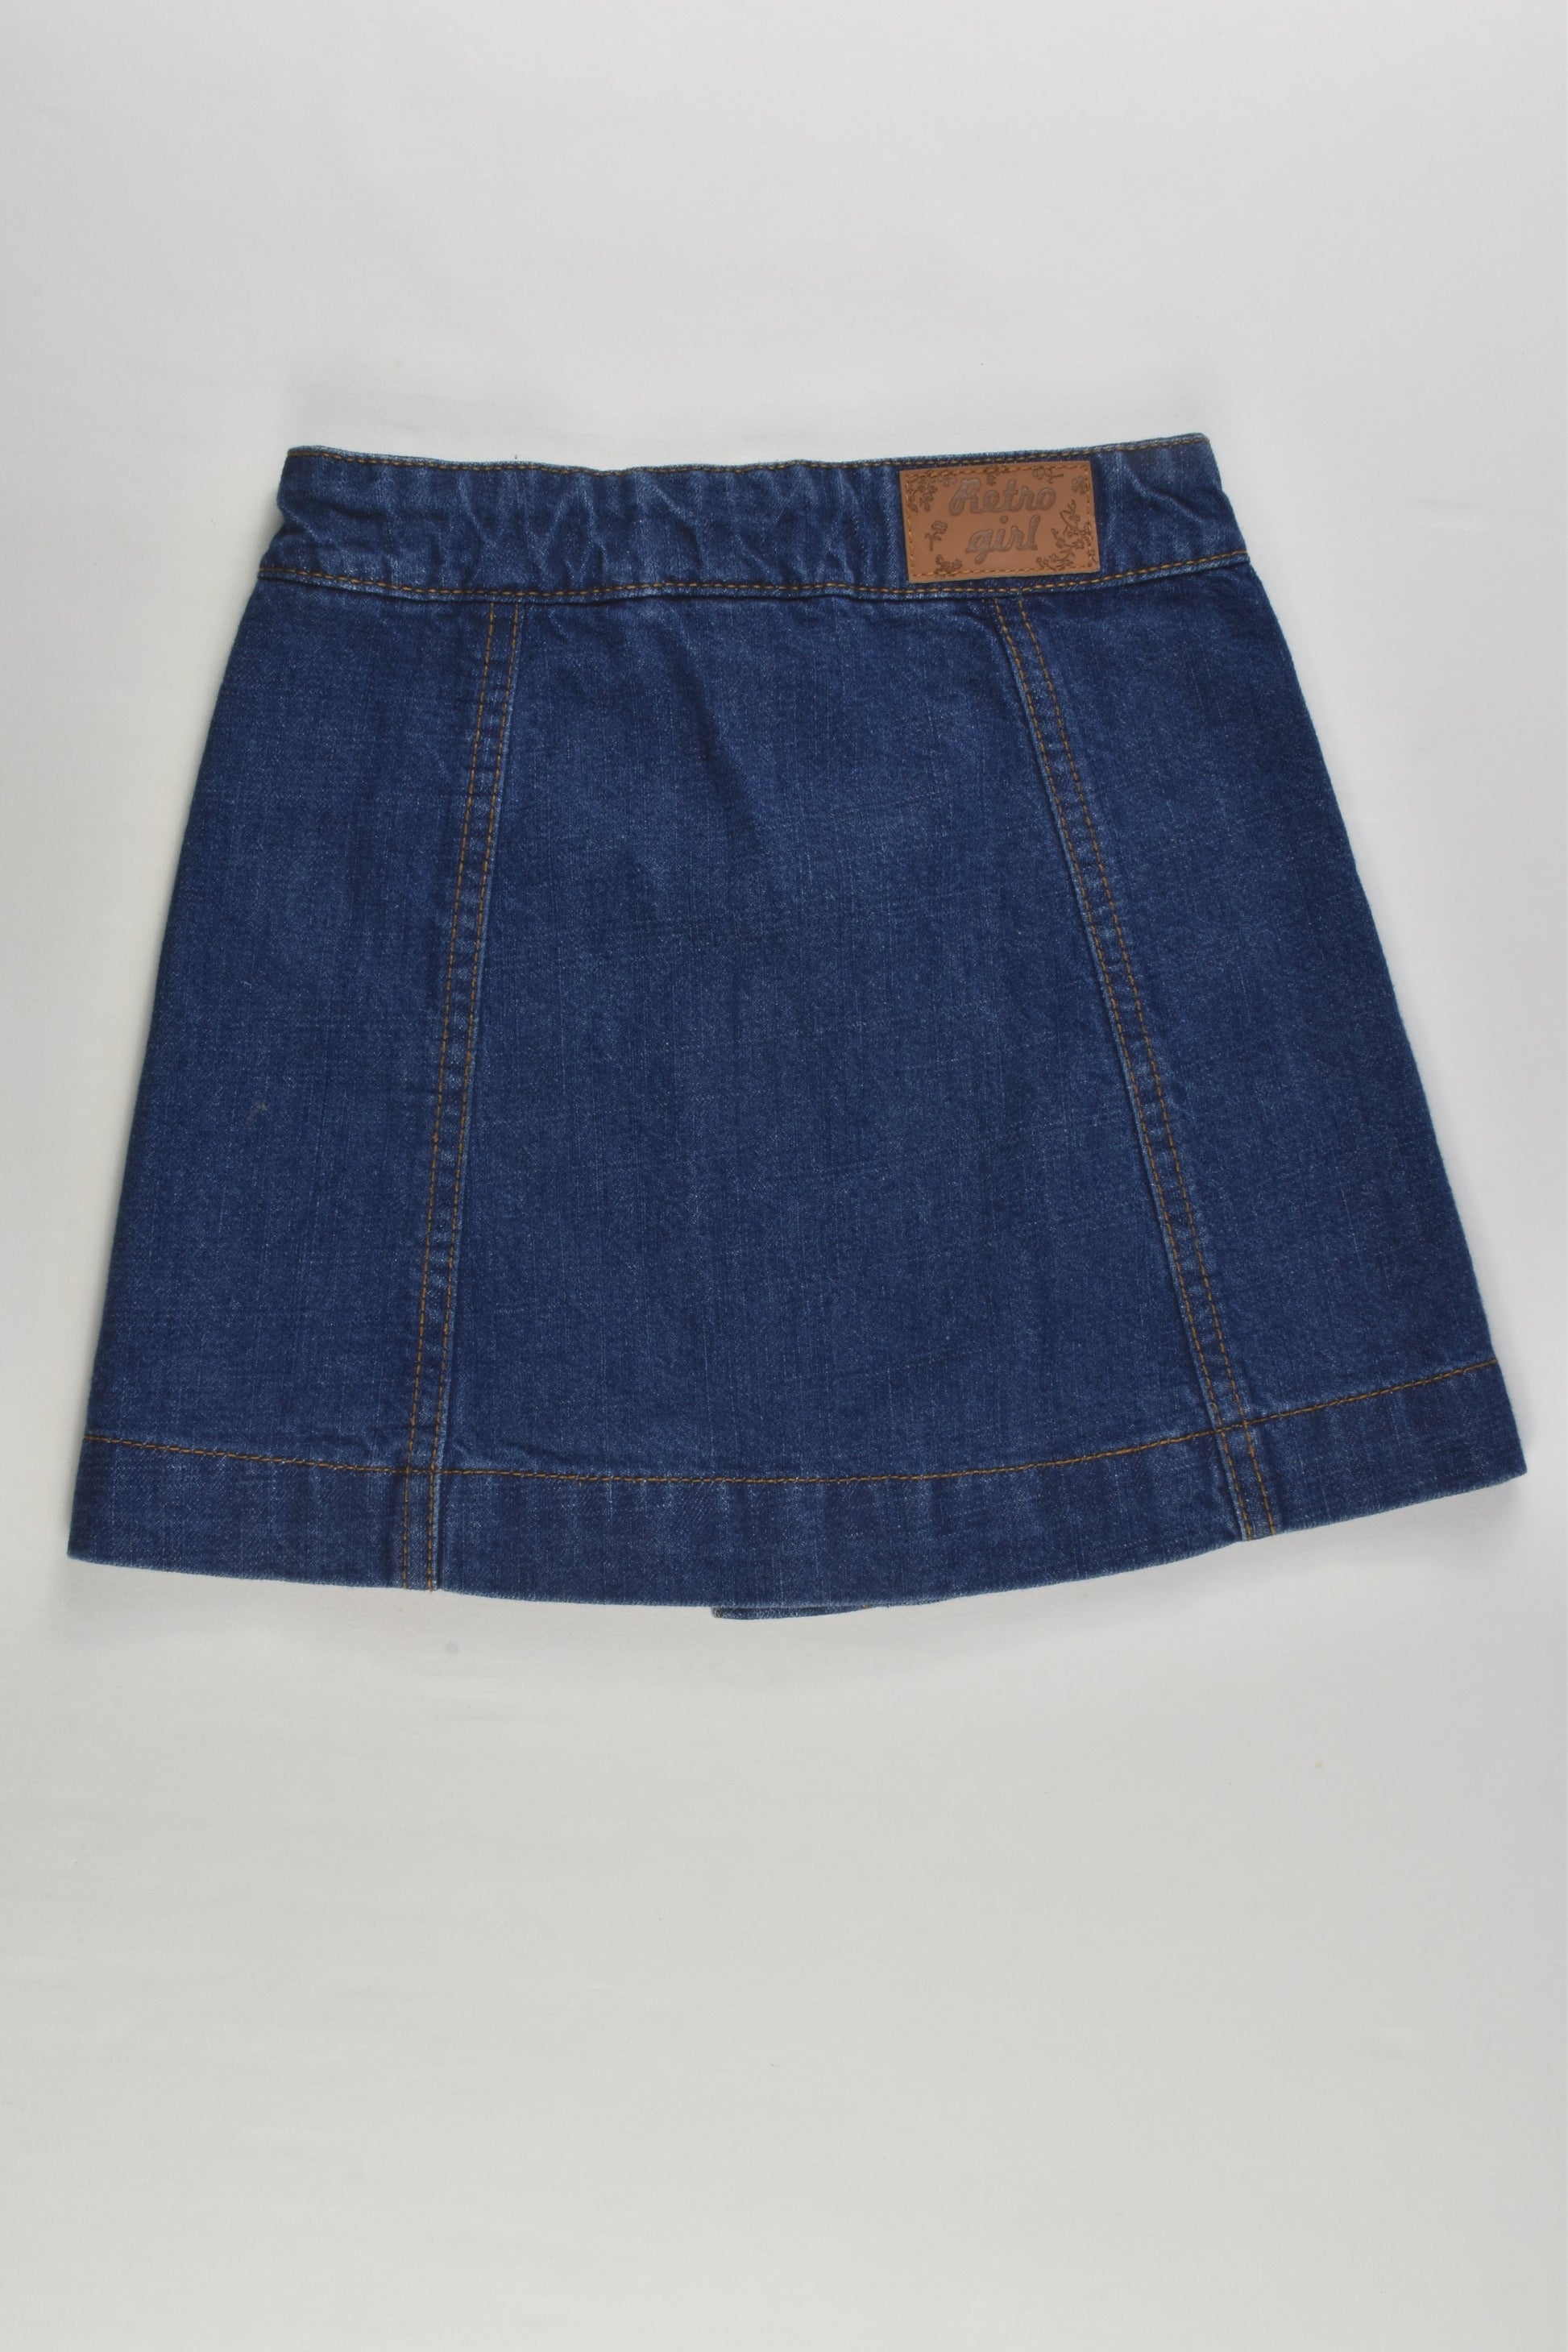 NEW St Bernard for Dunnes Stores Size 3 'Retro Girl' Denim Skirt